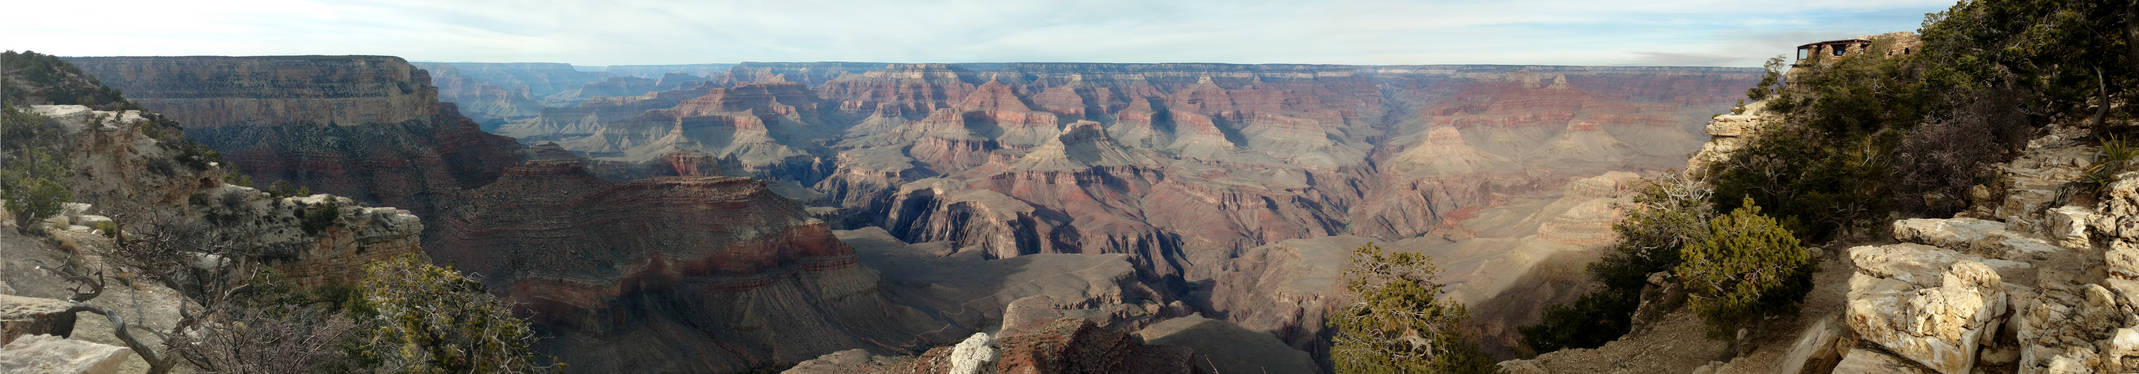 Grand Canyon Composite